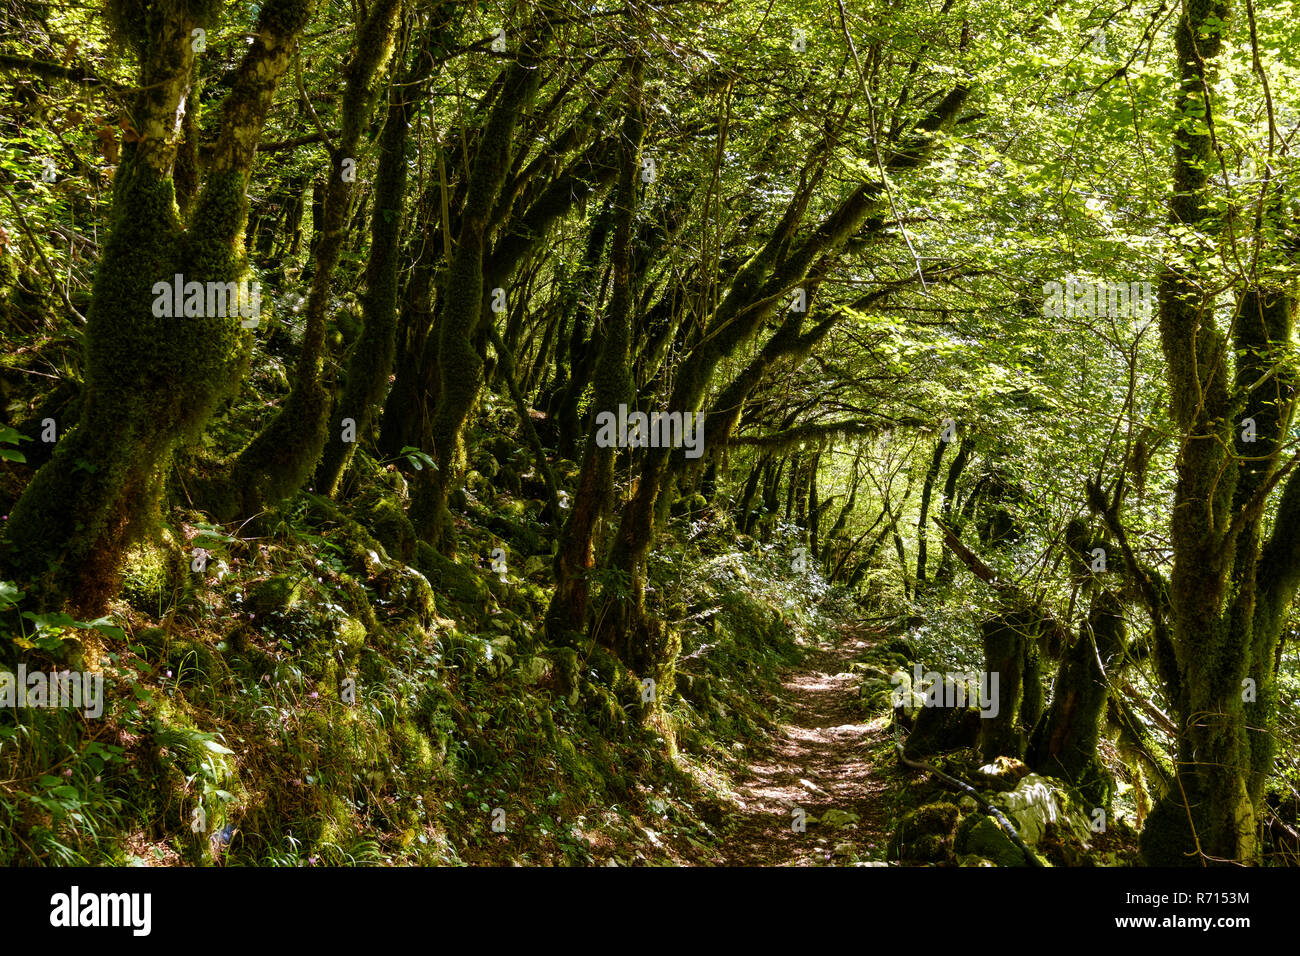 Hiking trail in dense vegetation, forest, Mrtvica gorge, near Kolasin, Montenegro Stock Photo